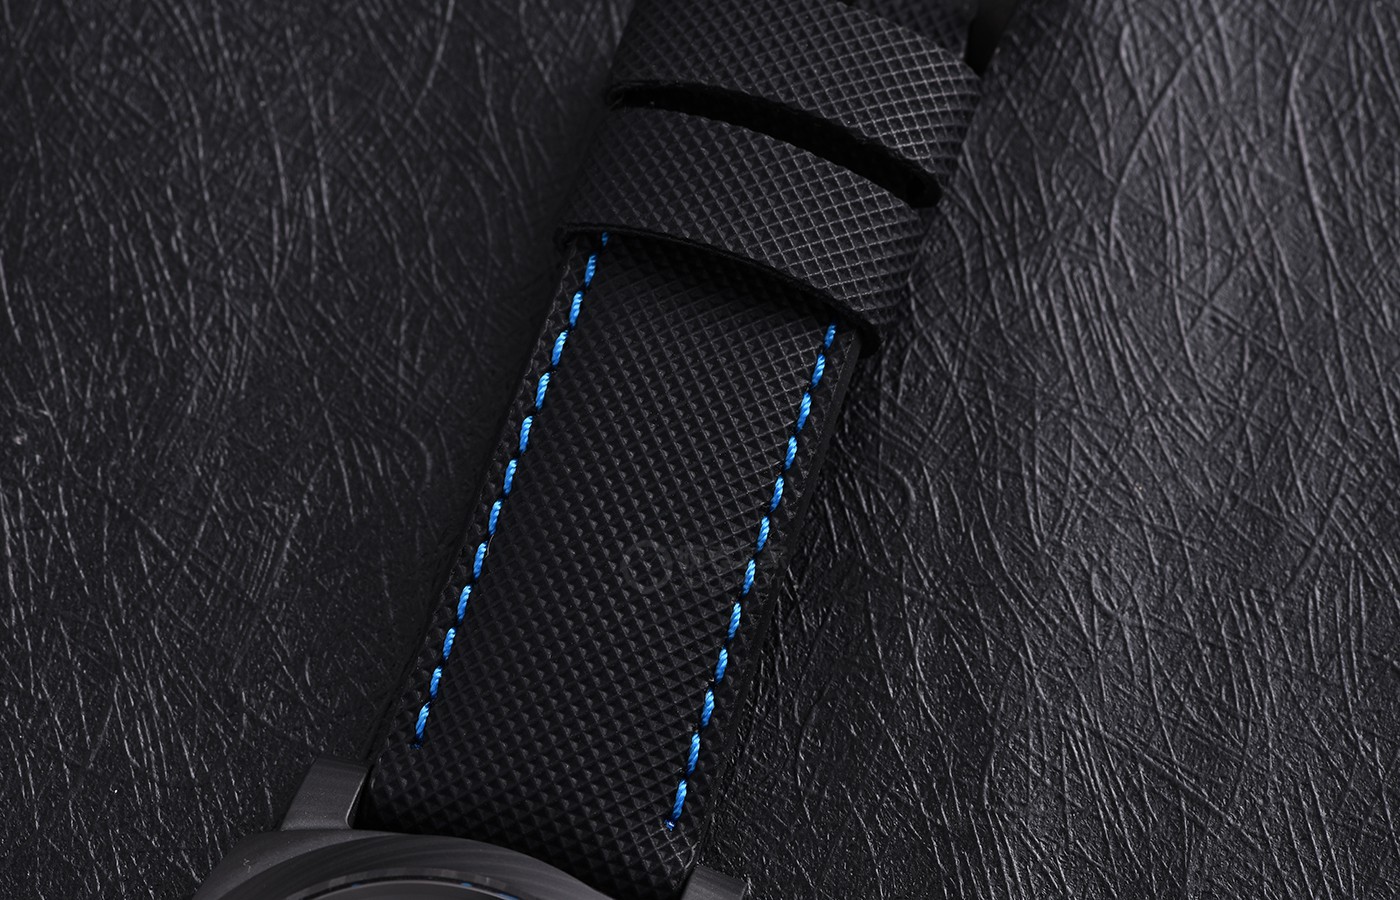 材质美学 品鉴沛纳海庐米诺系列碳纤维腕表-44毫米